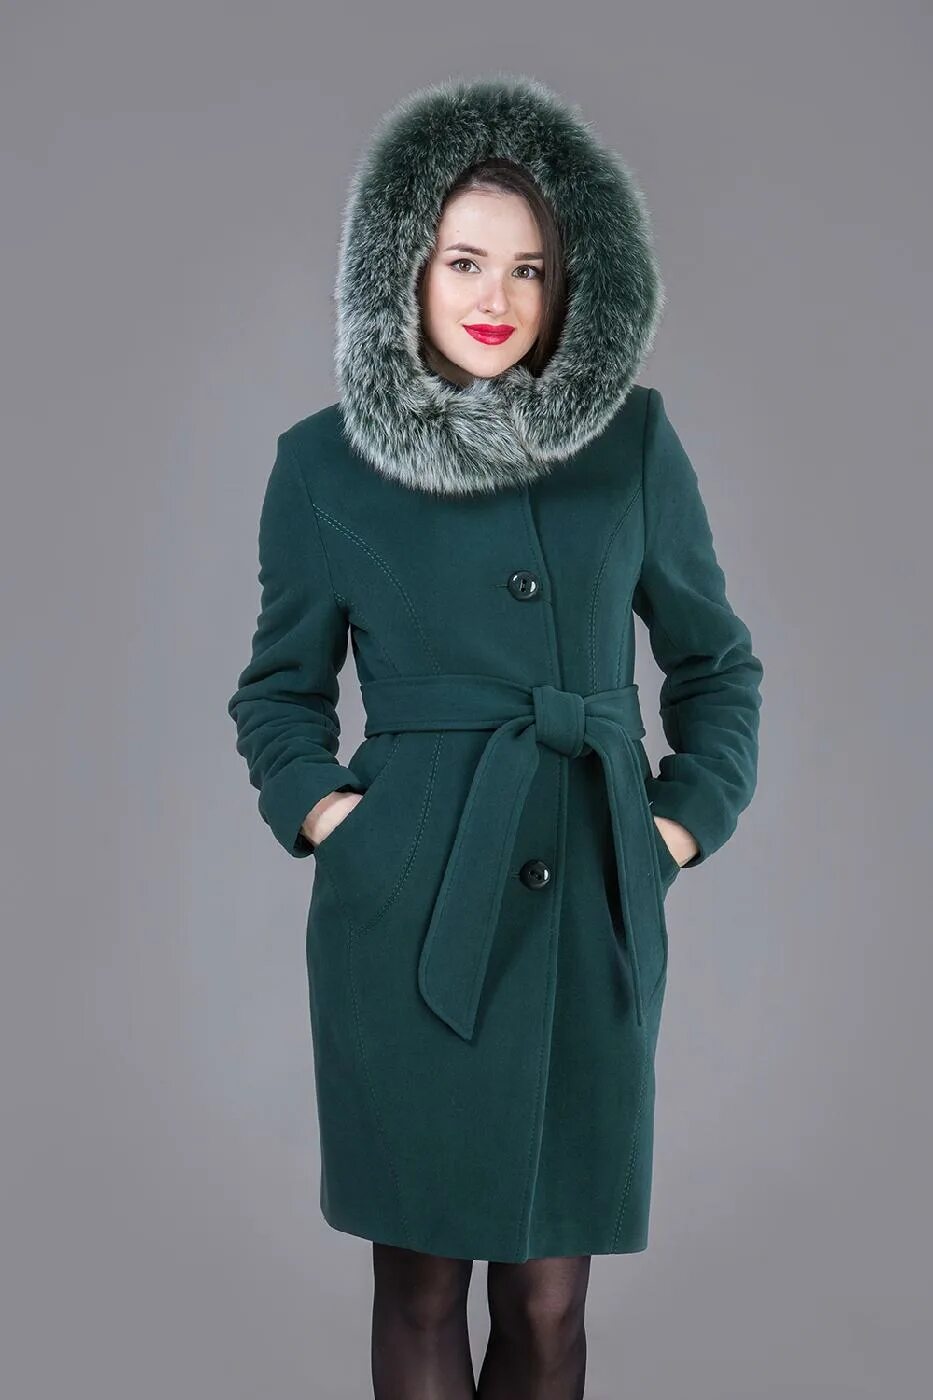 Пальто купить 58. Зимнее пальто женское. Полупальто женское зимнее. Драповое пальто женское зимнее. Пальто женское зимнее с капюшоном.